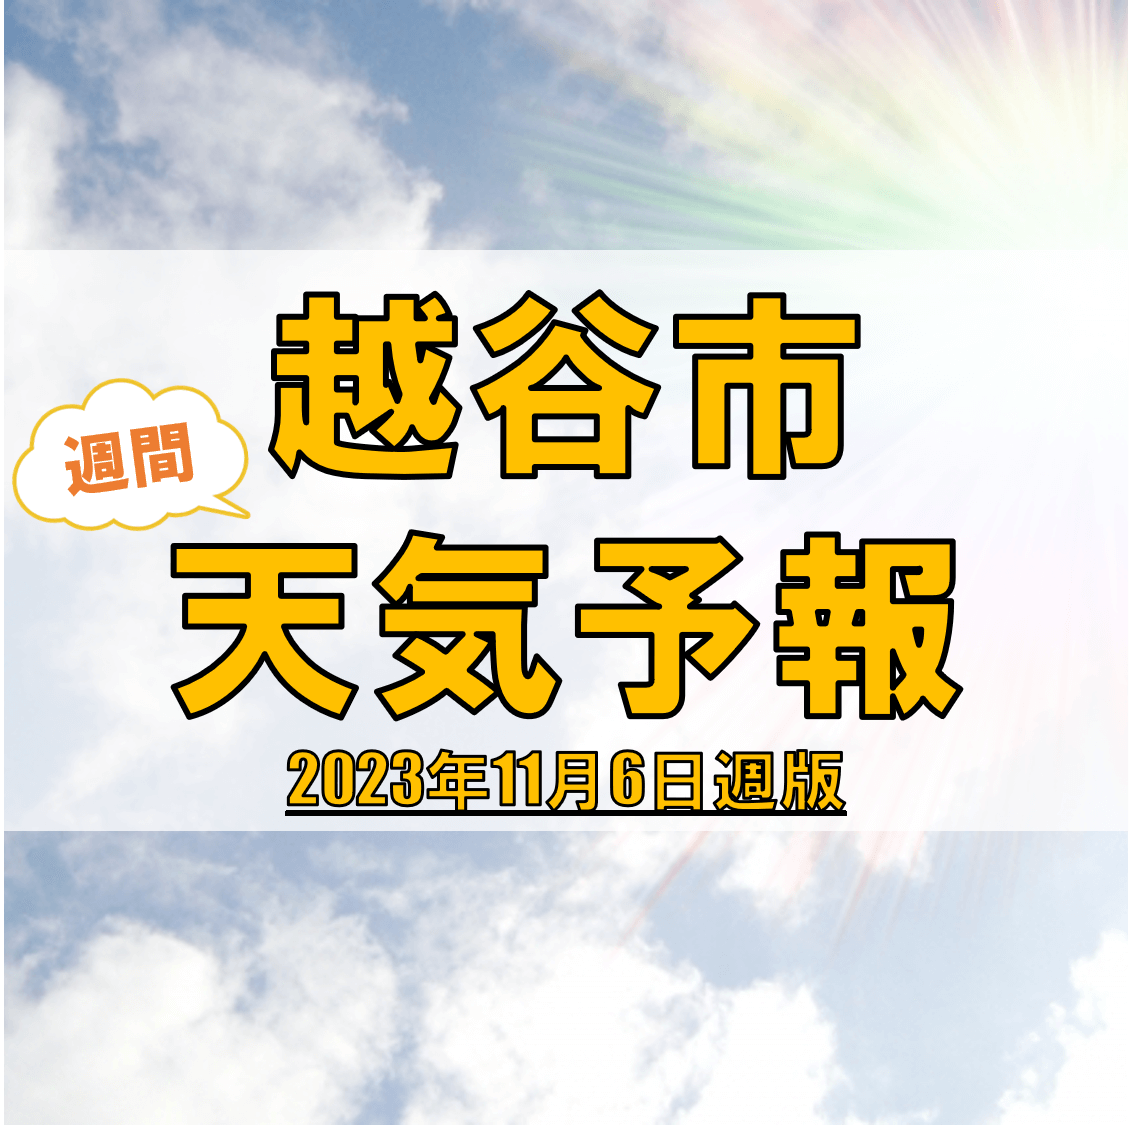 越谷市の天気 週間予報【2023年11月6日週】